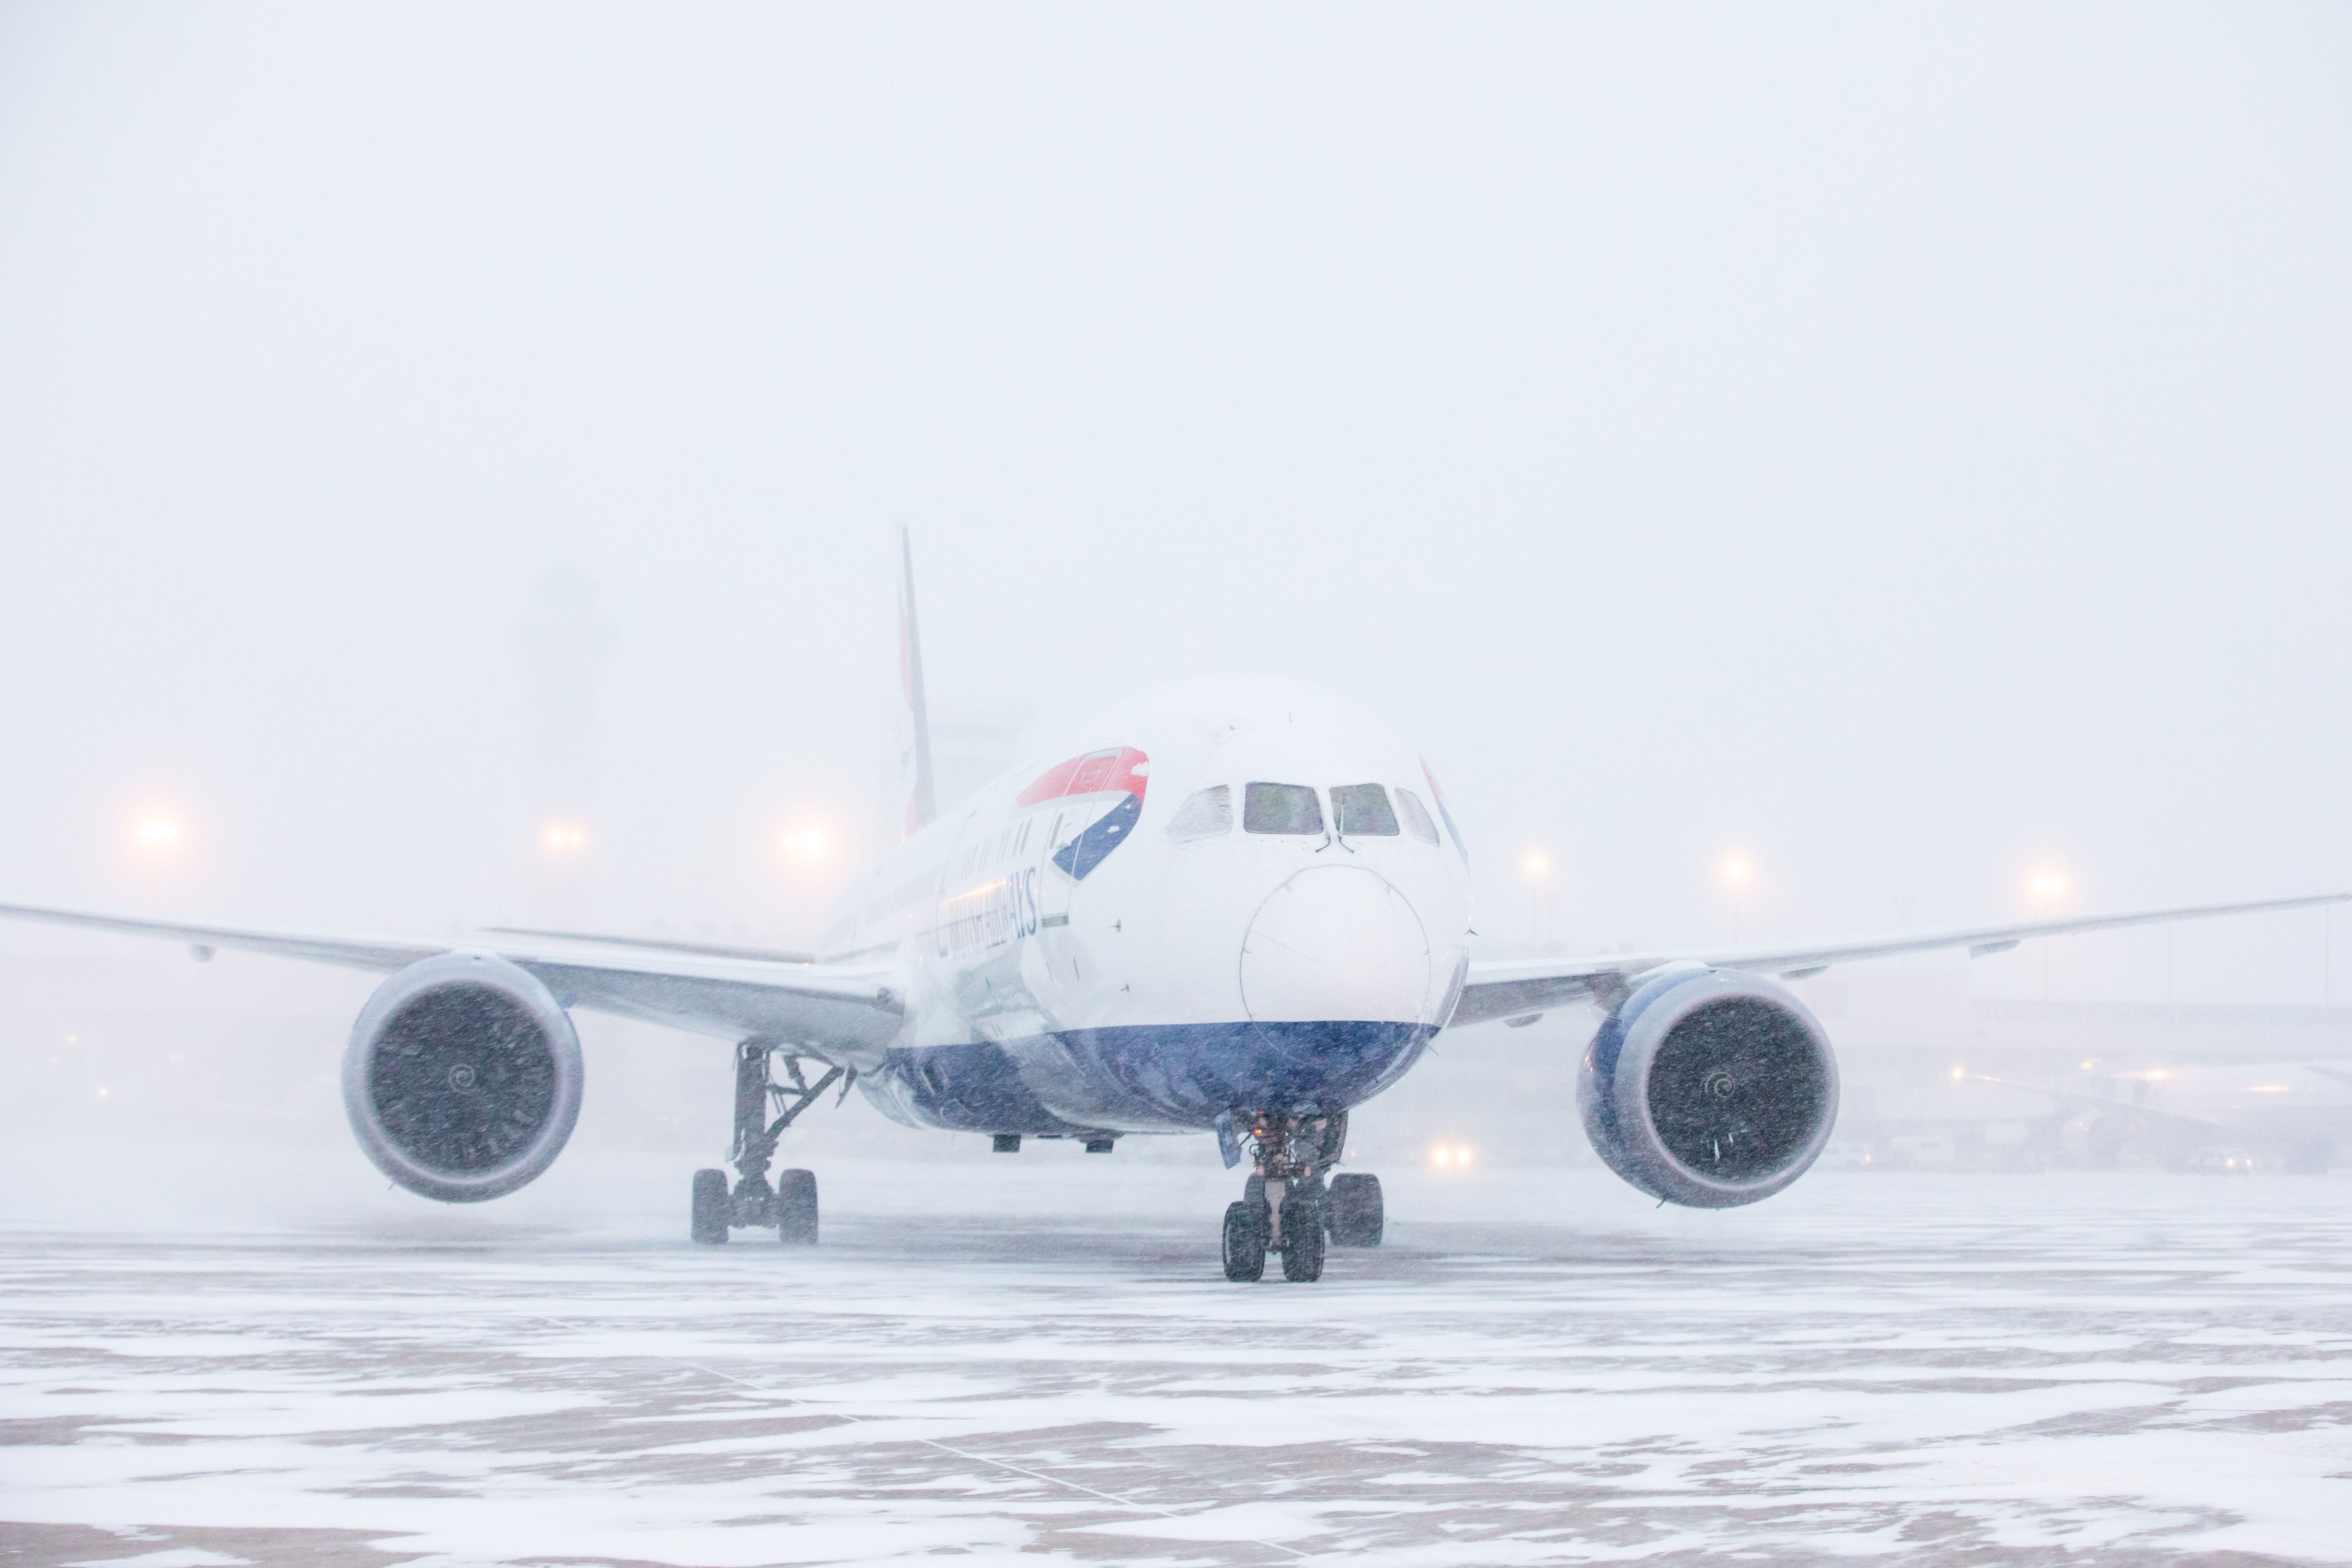 A British Airways plane landing in the snow.